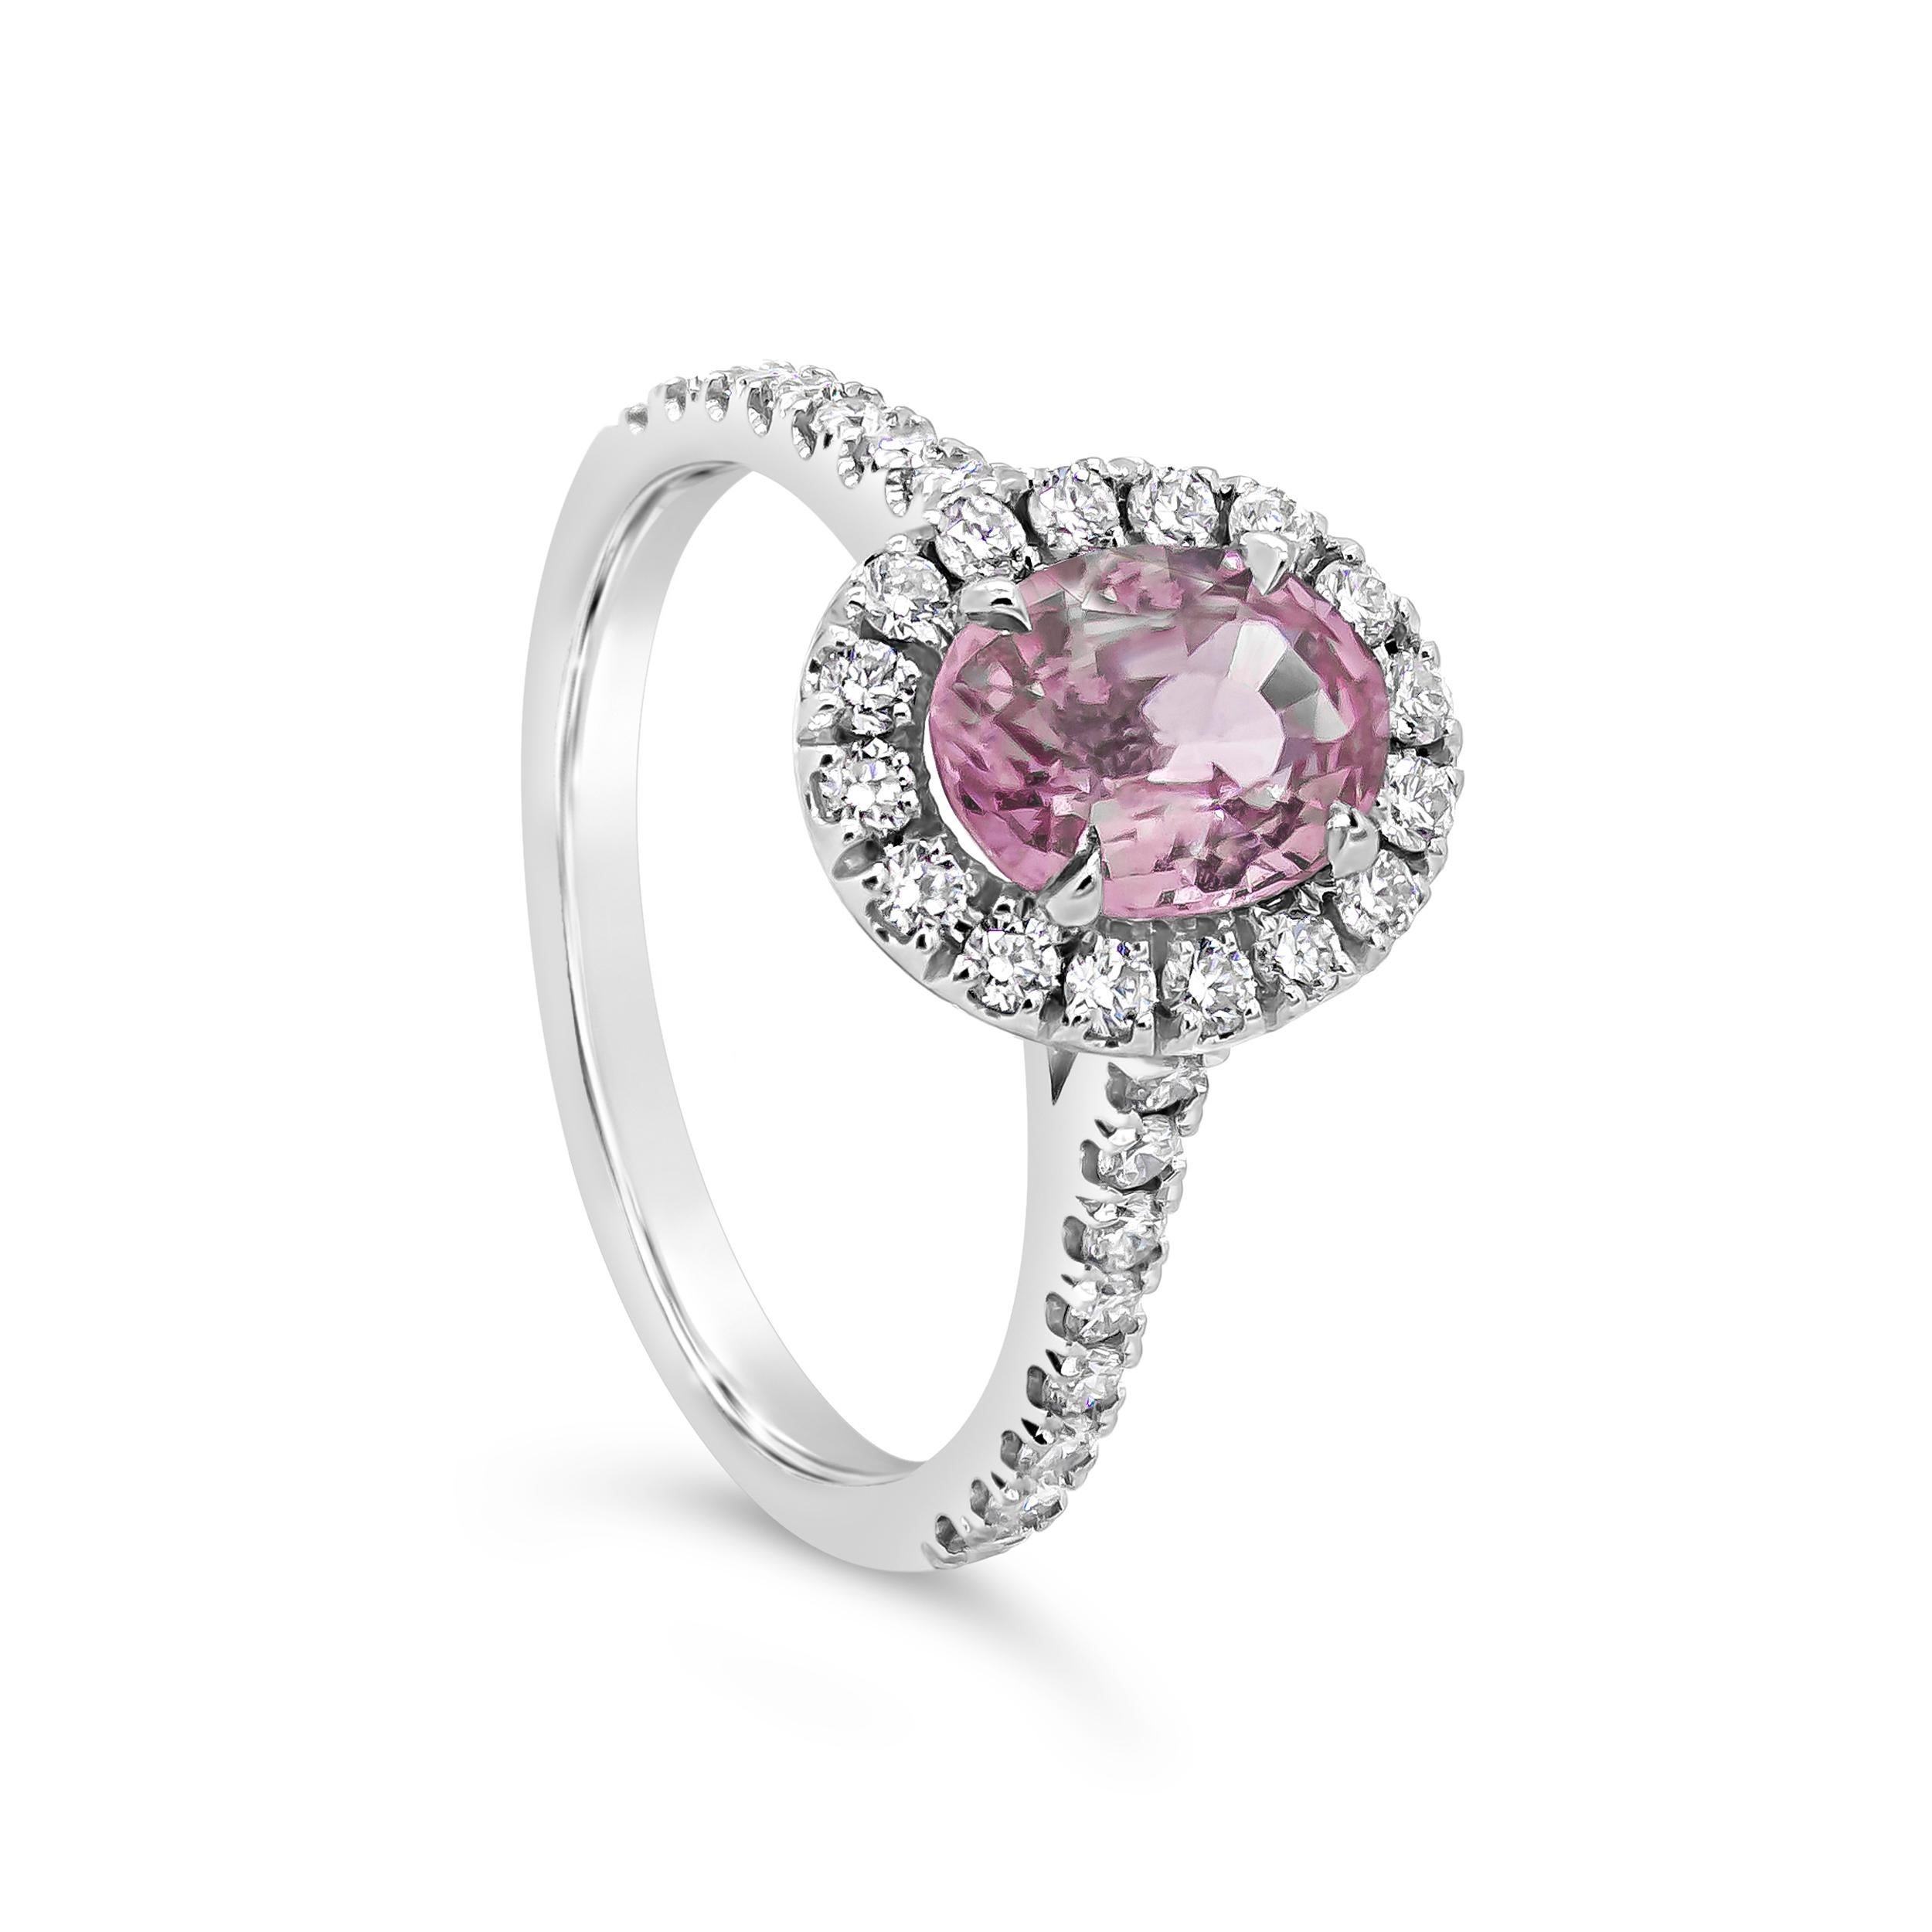 Ein attraktiver Halo-Verlobungsring mit einem oval geschliffenen rosafarbenen Saphir von insgesamt 1,57 Karat, der elegant von einer Reihe runder Brillanten von 0,50 Karat umgeben ist. Akzentuiert mit einem diamantbesetzten Ehering auf halber